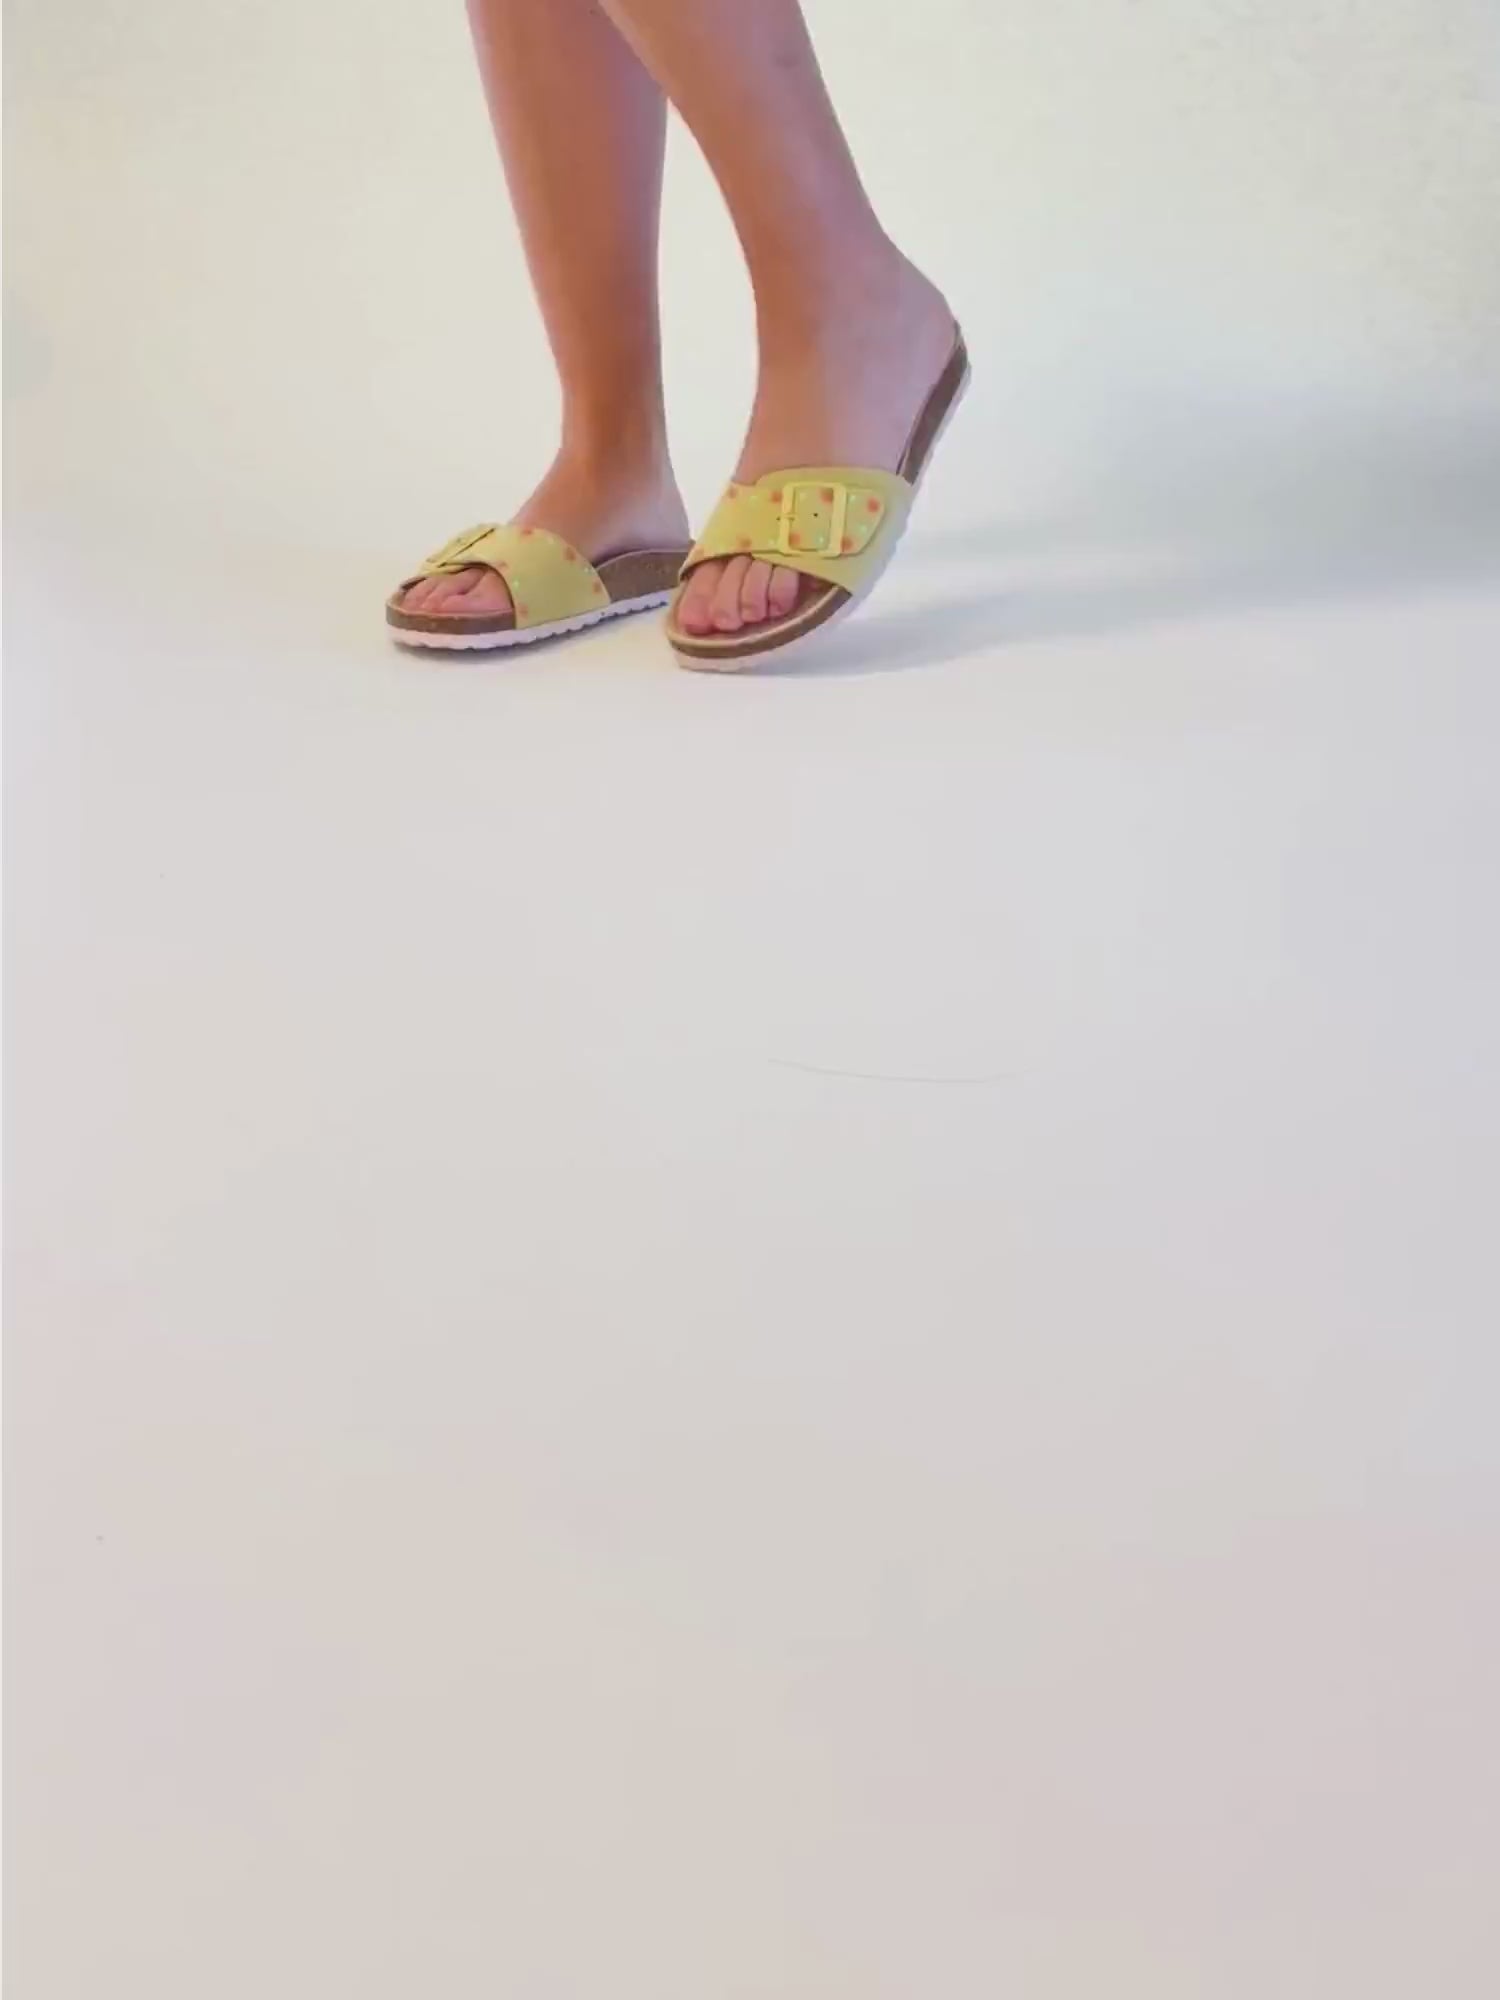 Sandalia plana de hebilla. Sandalia de mujer cómoda y ligera para el verano.